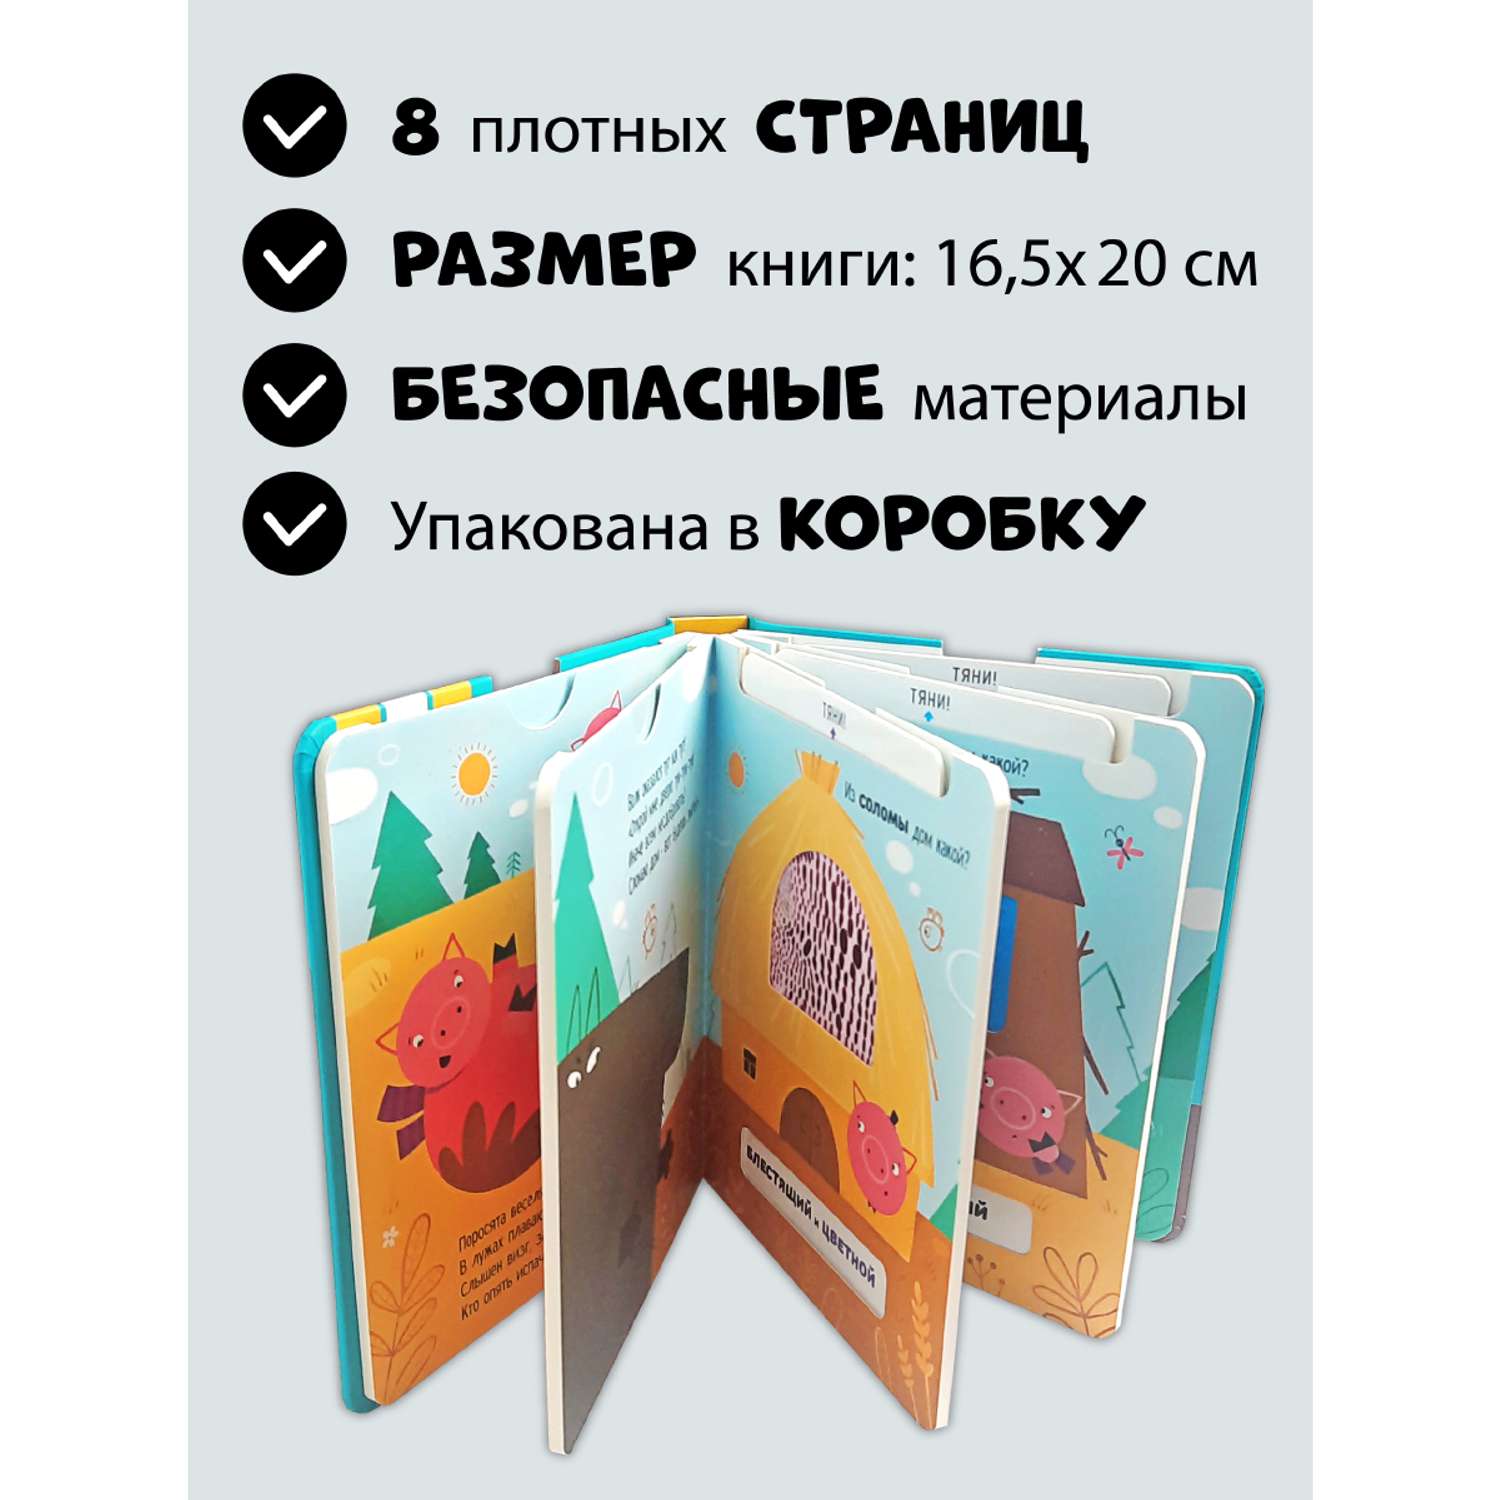 Тактильная развивающая книга Счастье внутри сказка для детей с выемными карточками Три поросенка - фото 5